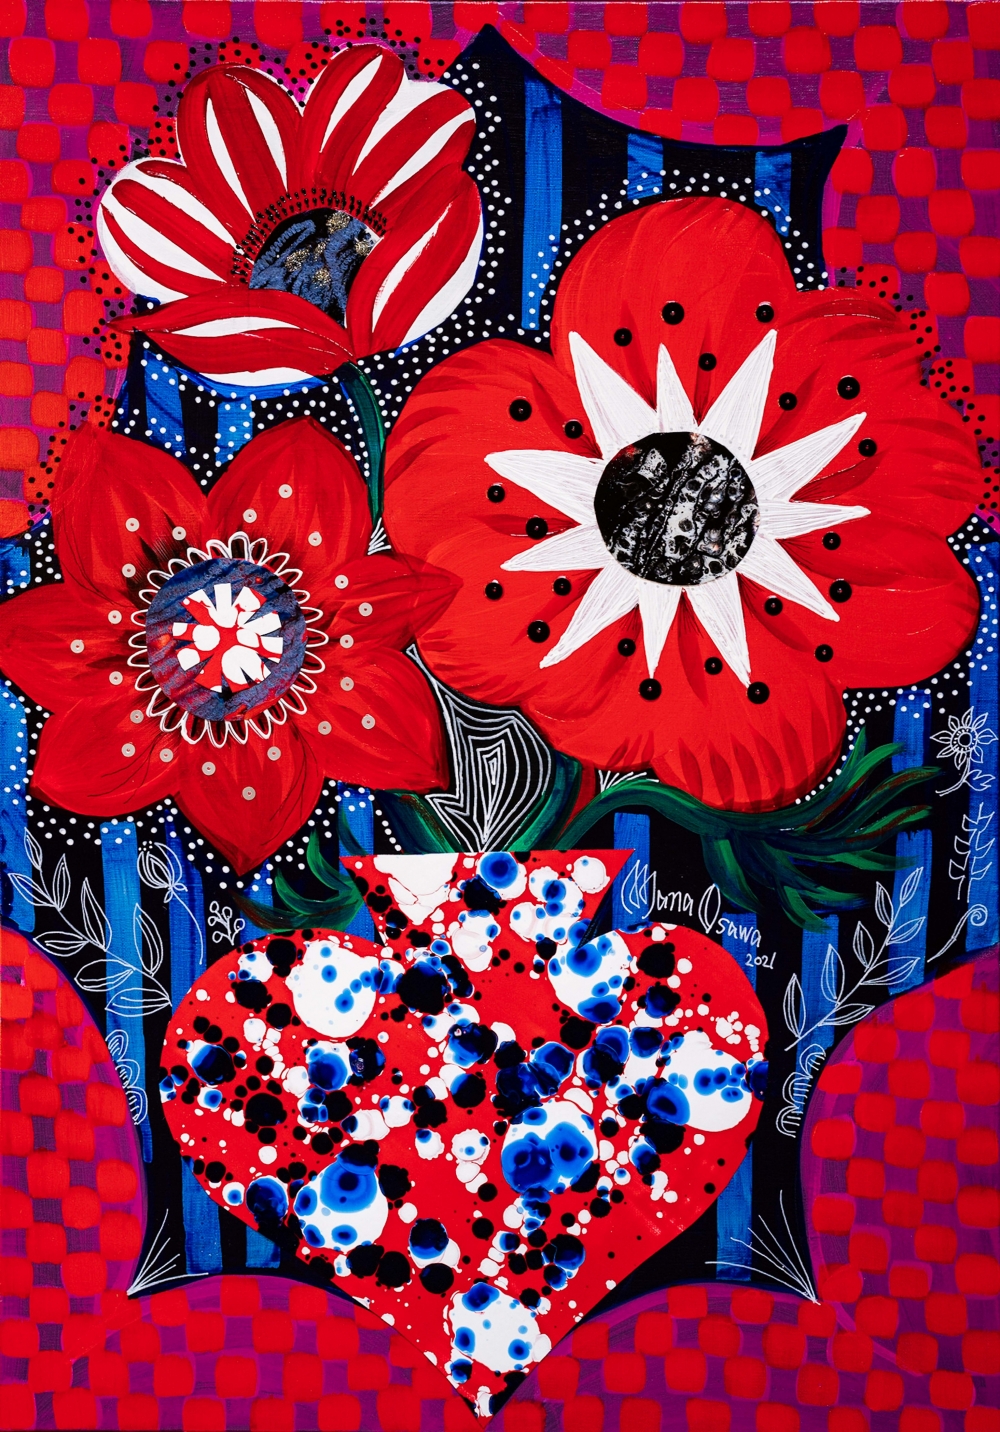 大沢愛 Mana Osawa/Anemone with Flower vase All Red/exid44394wid42081